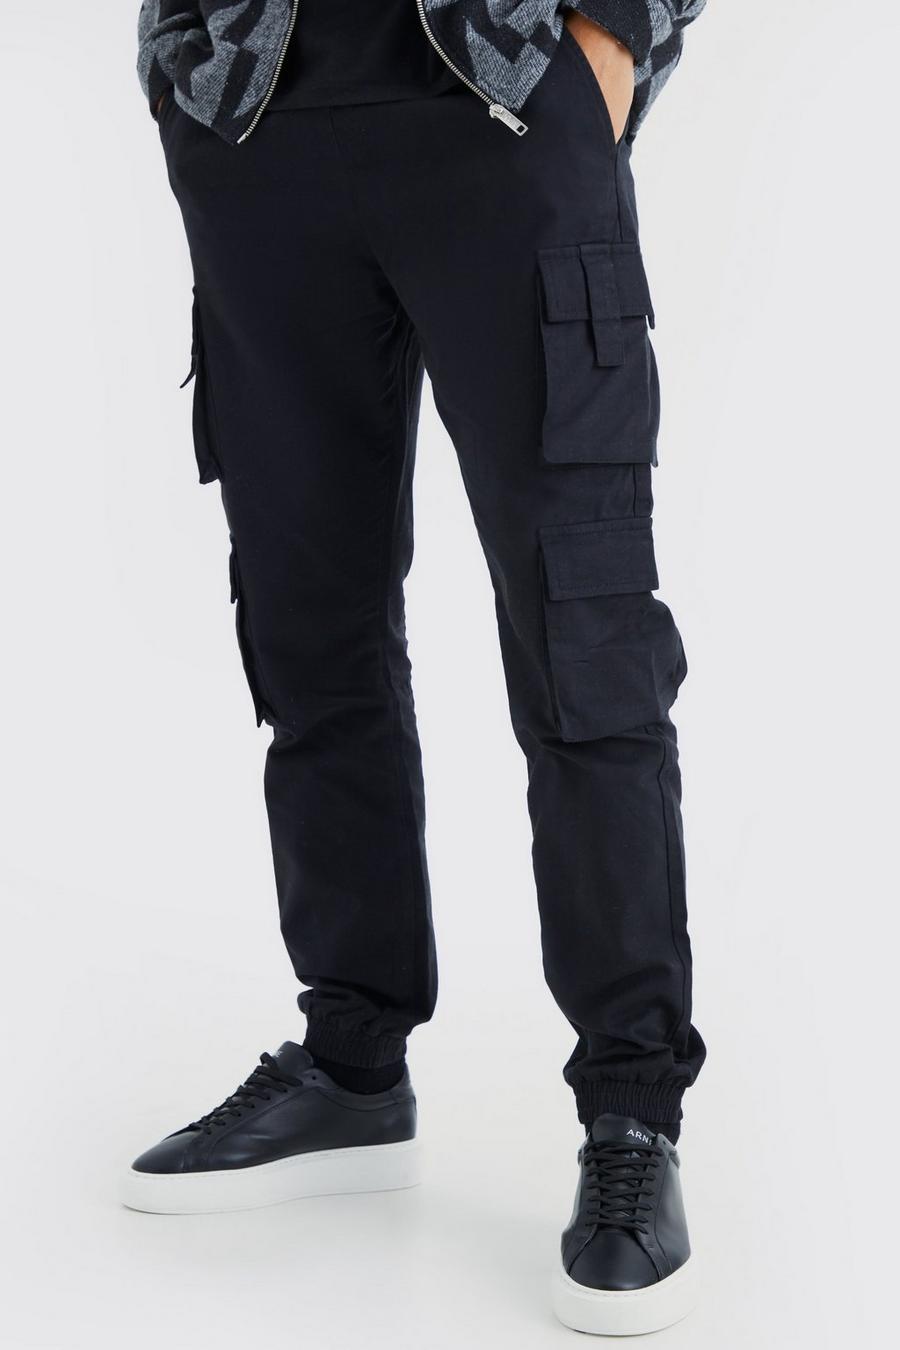 Pantalón deportivo Tall ajustado con cintura elástica y bolsillos cargo, Black